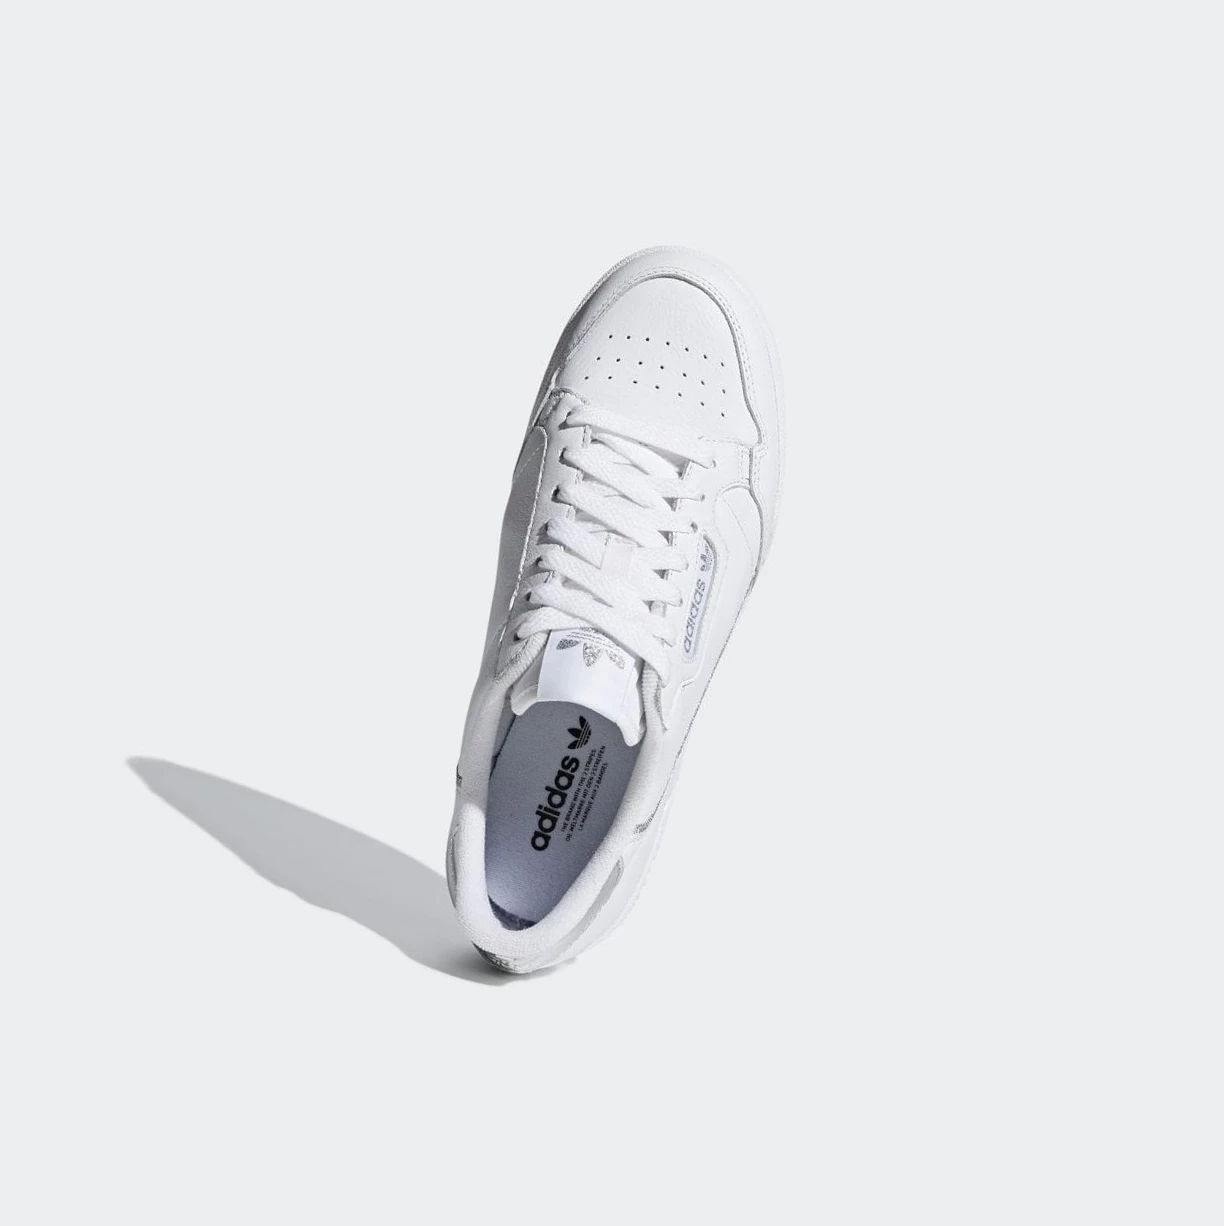 Originálne Topánky Adidas Continental 80 Damske Biele | 864SKLWRMNV